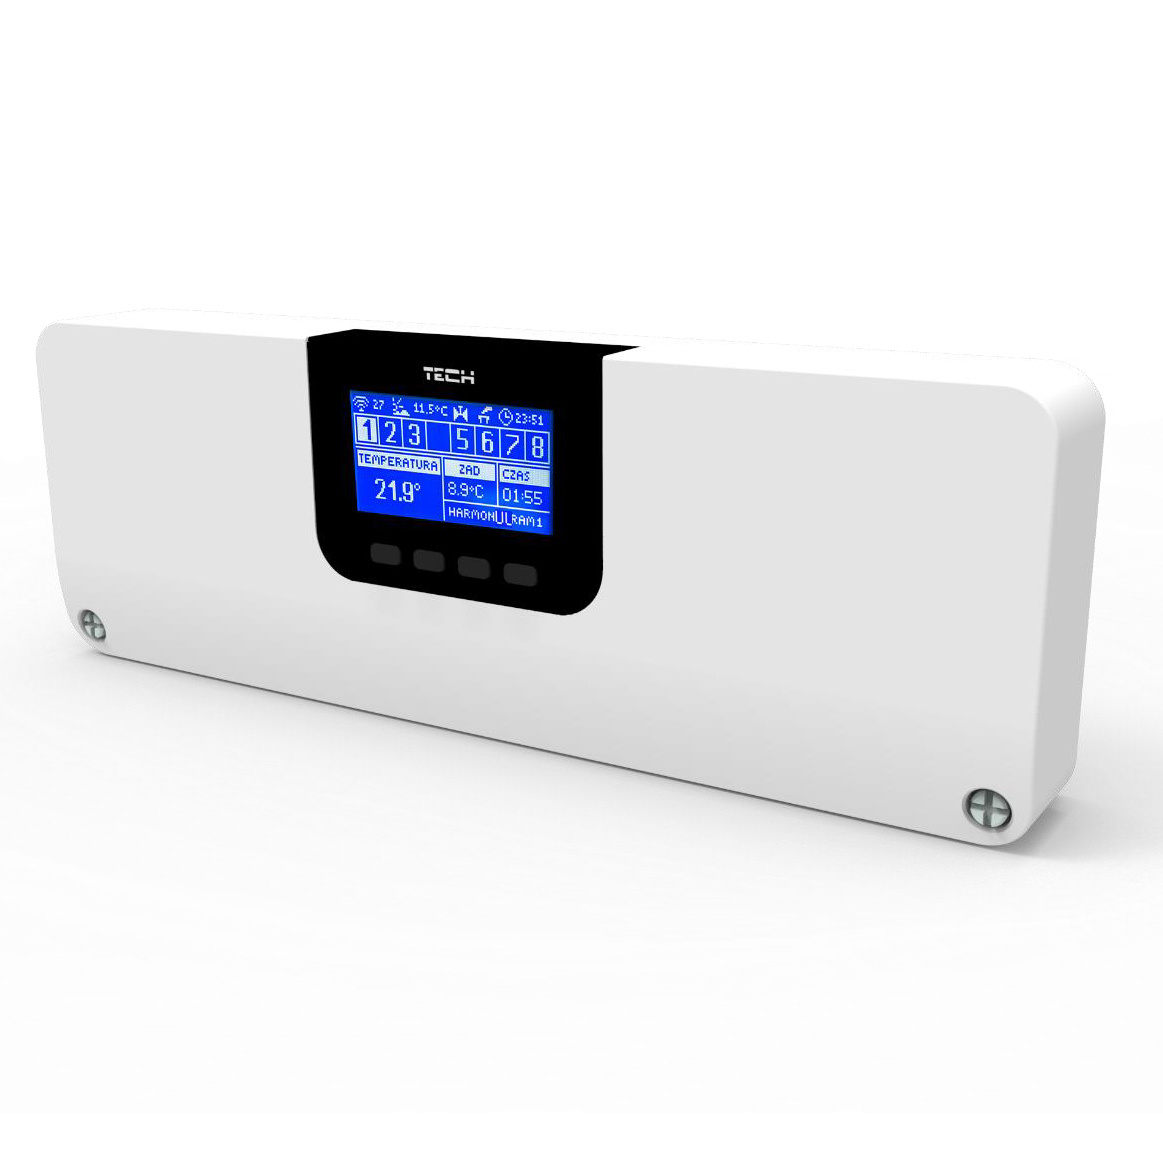 Przewodowo-bezprzewodowy sterownik zaworów termostatycznych (8 sekcji) (DWZ)